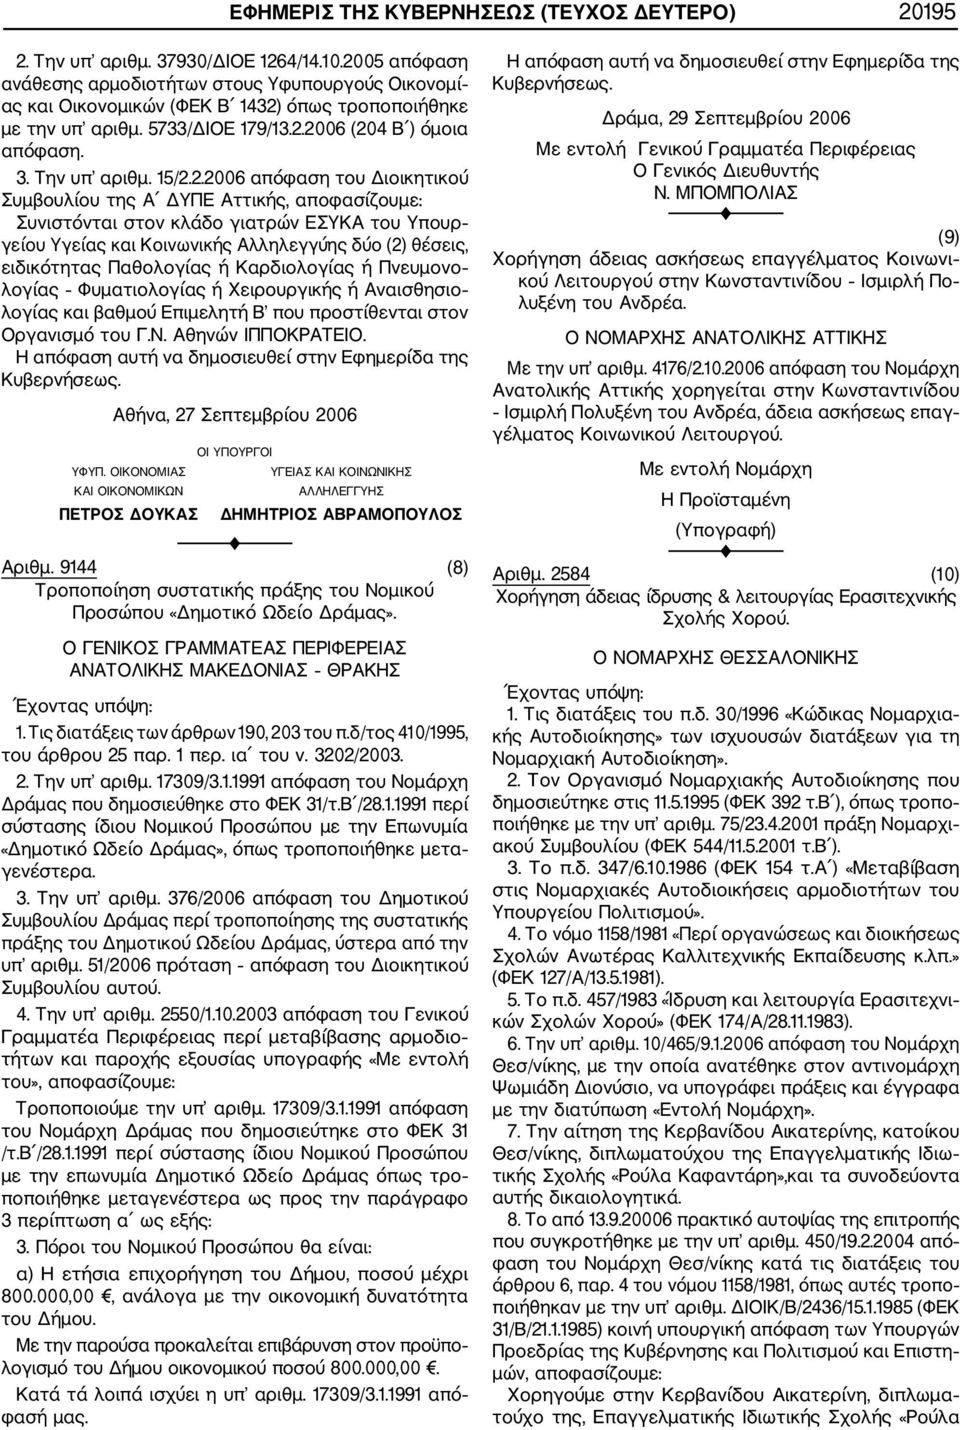 2.2006 απόφαση του Διοικητικού Συμβουλίου της Α ΔΥΠΕ Αττικής, αποφασίζουμε: Συνιστόνται στον κλάδο γιατρών ΕΣΥΚΑ του Υπουρ γείου Υγείας και Κοινωνικής Αλληλεγγύης δύο (2) θέσεις, ειδικότητας